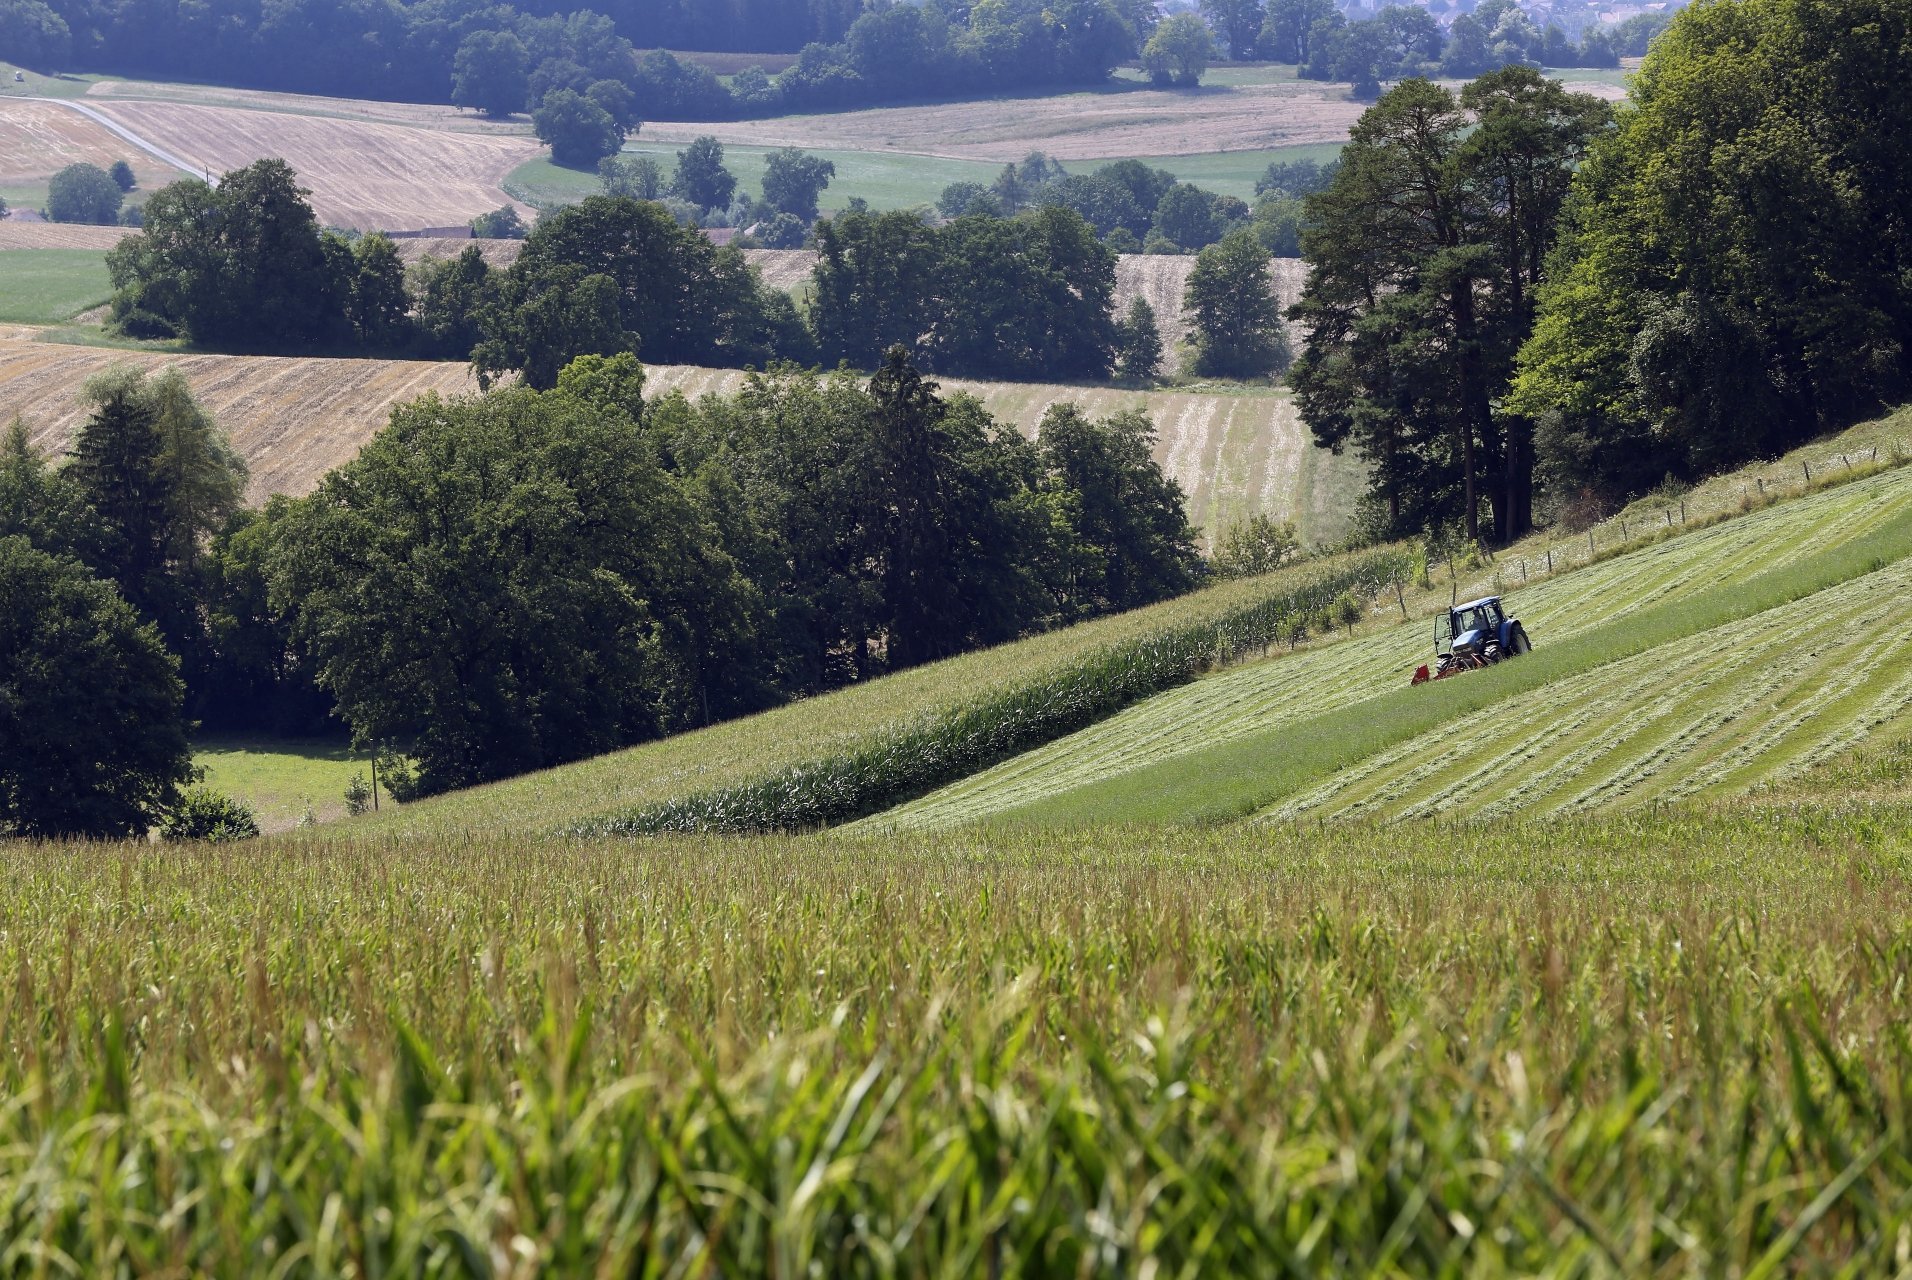 Agriculture, météo, été, sécheresse. Tracteur ramassant de l'herbe au milieu de champs de maïs, Châtillon 26 juillet 2018. (Roger Meier)